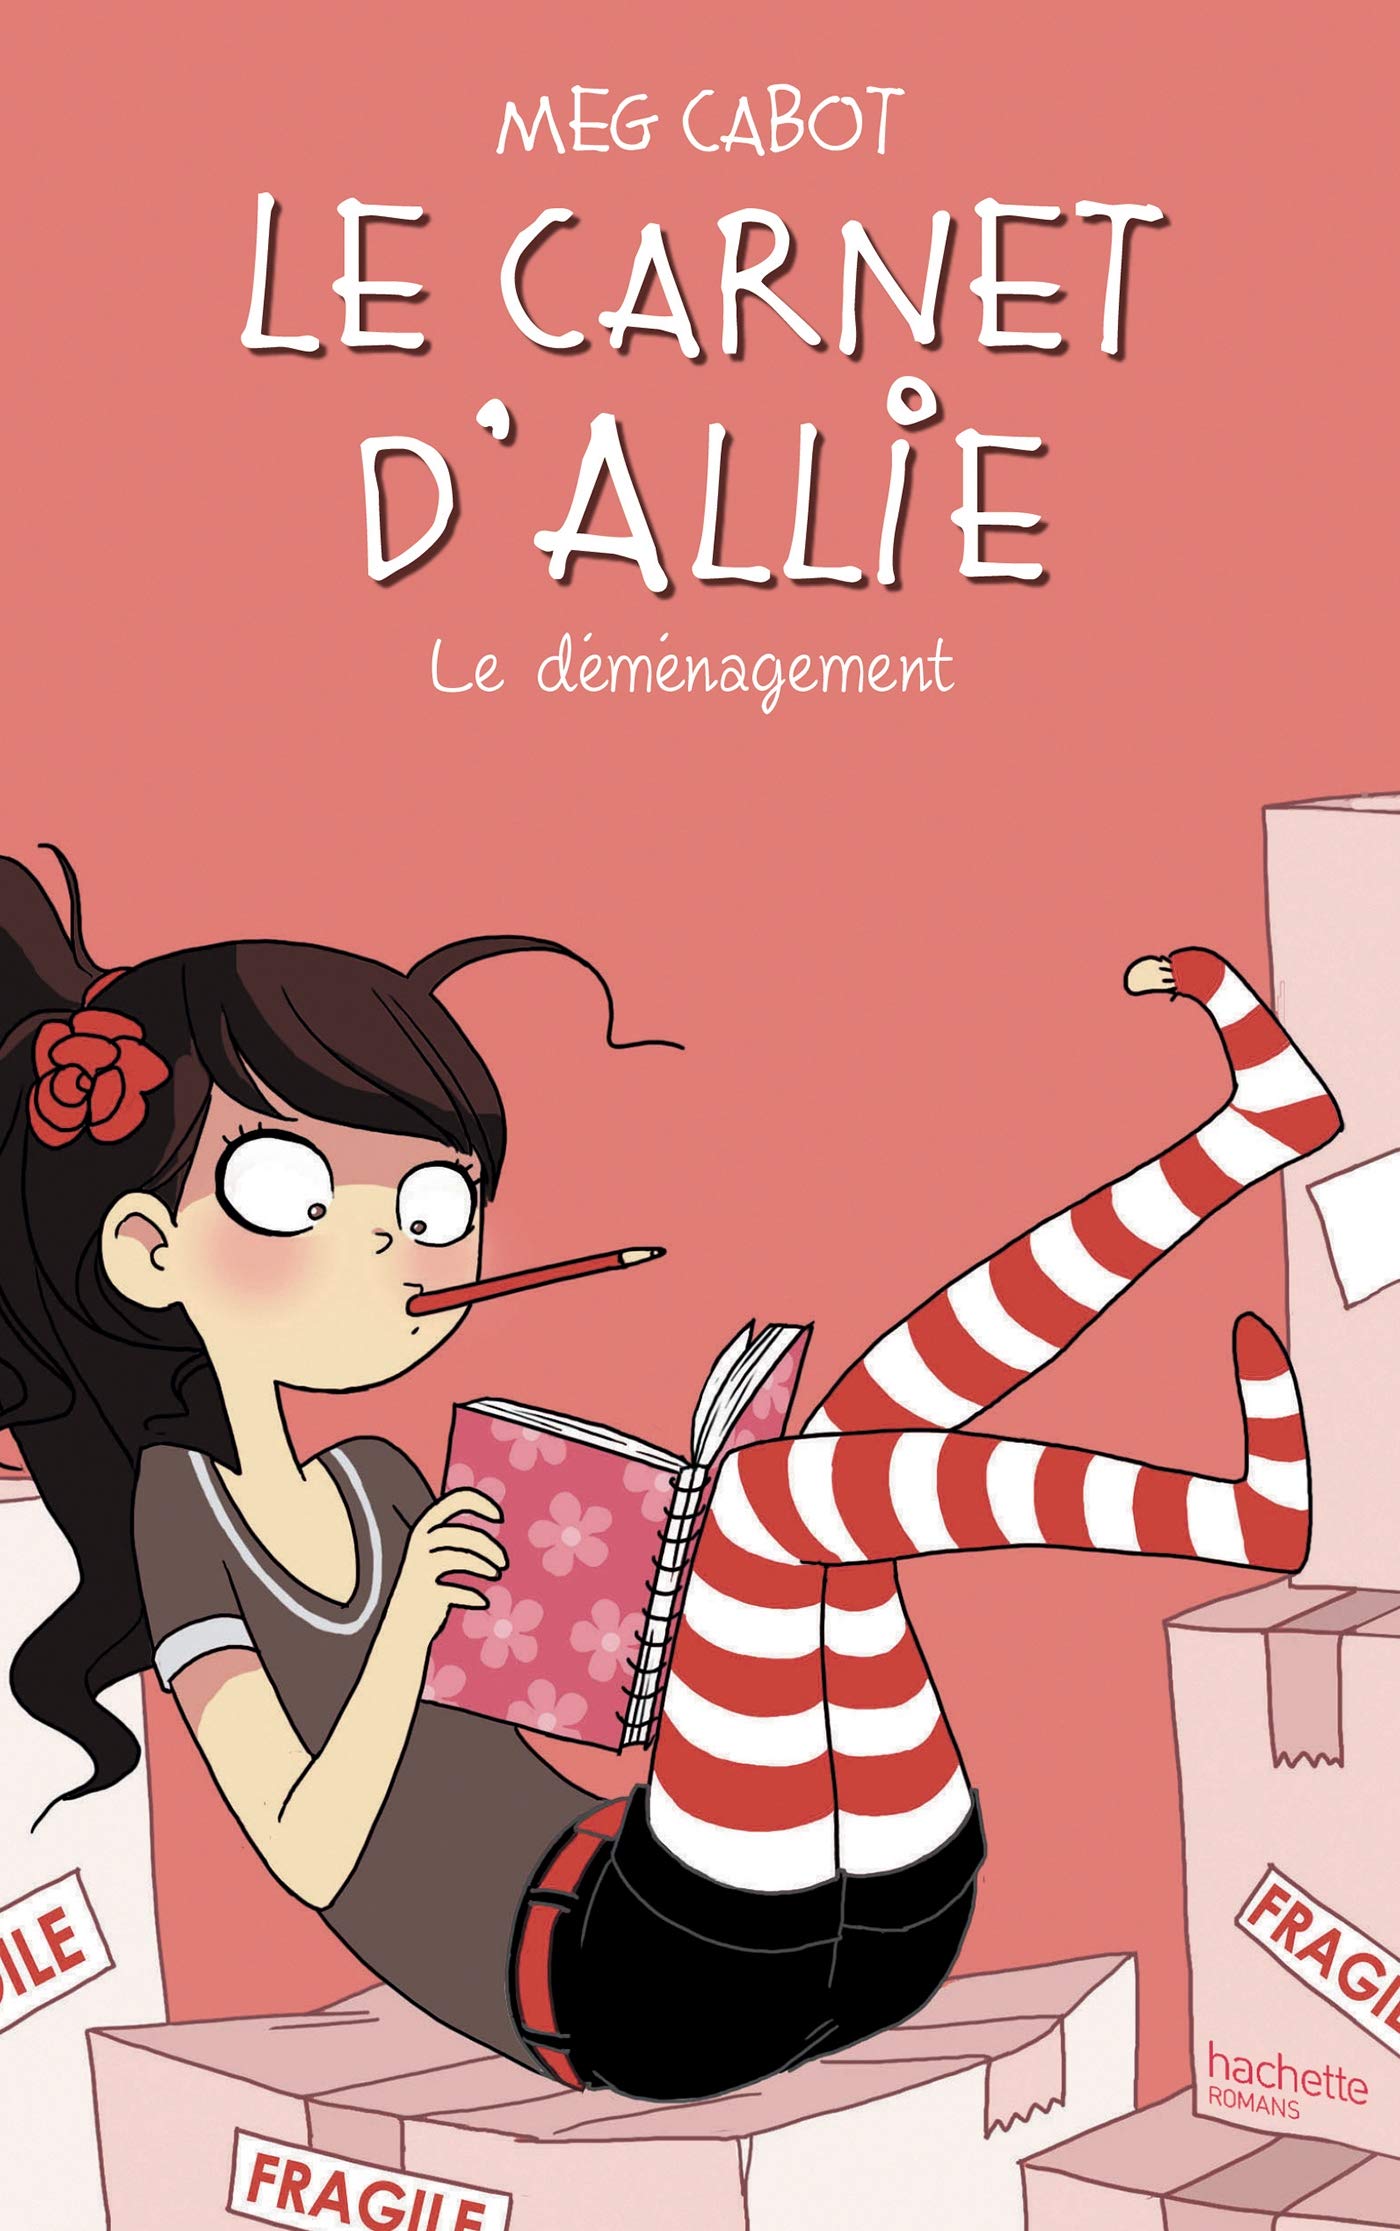 Livre ISBN 2012015654 Le carnet d'Allie # 1 : Le déménagement (Meg Cabot)